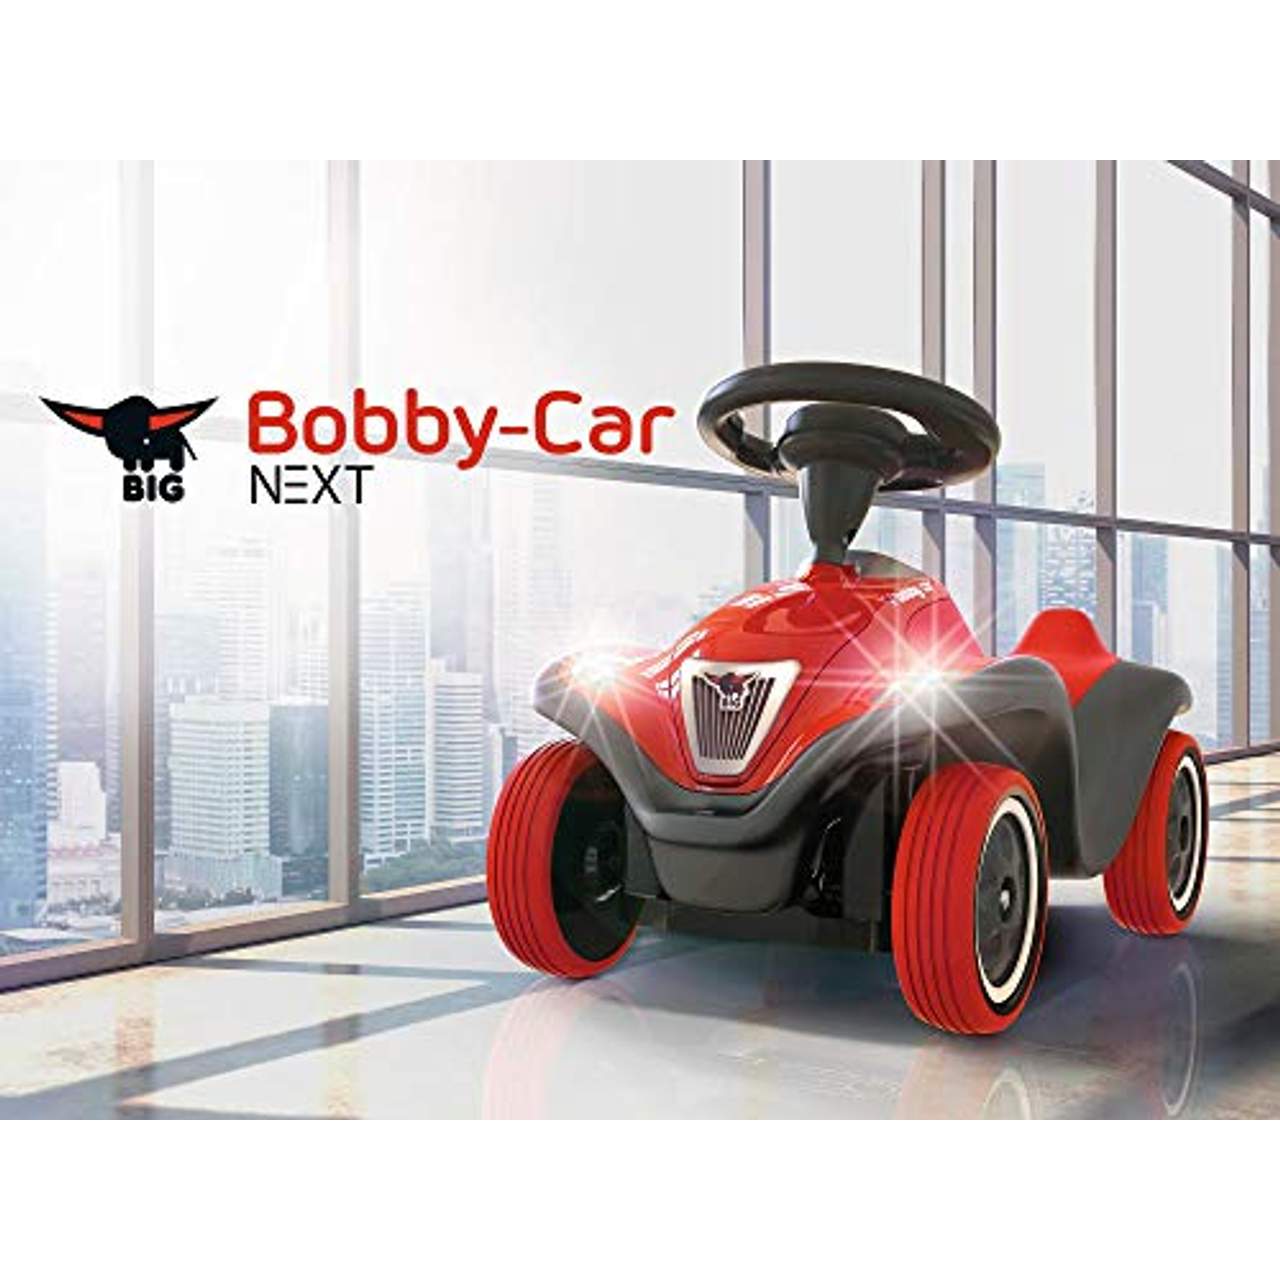 BIG  Bobby-car Next